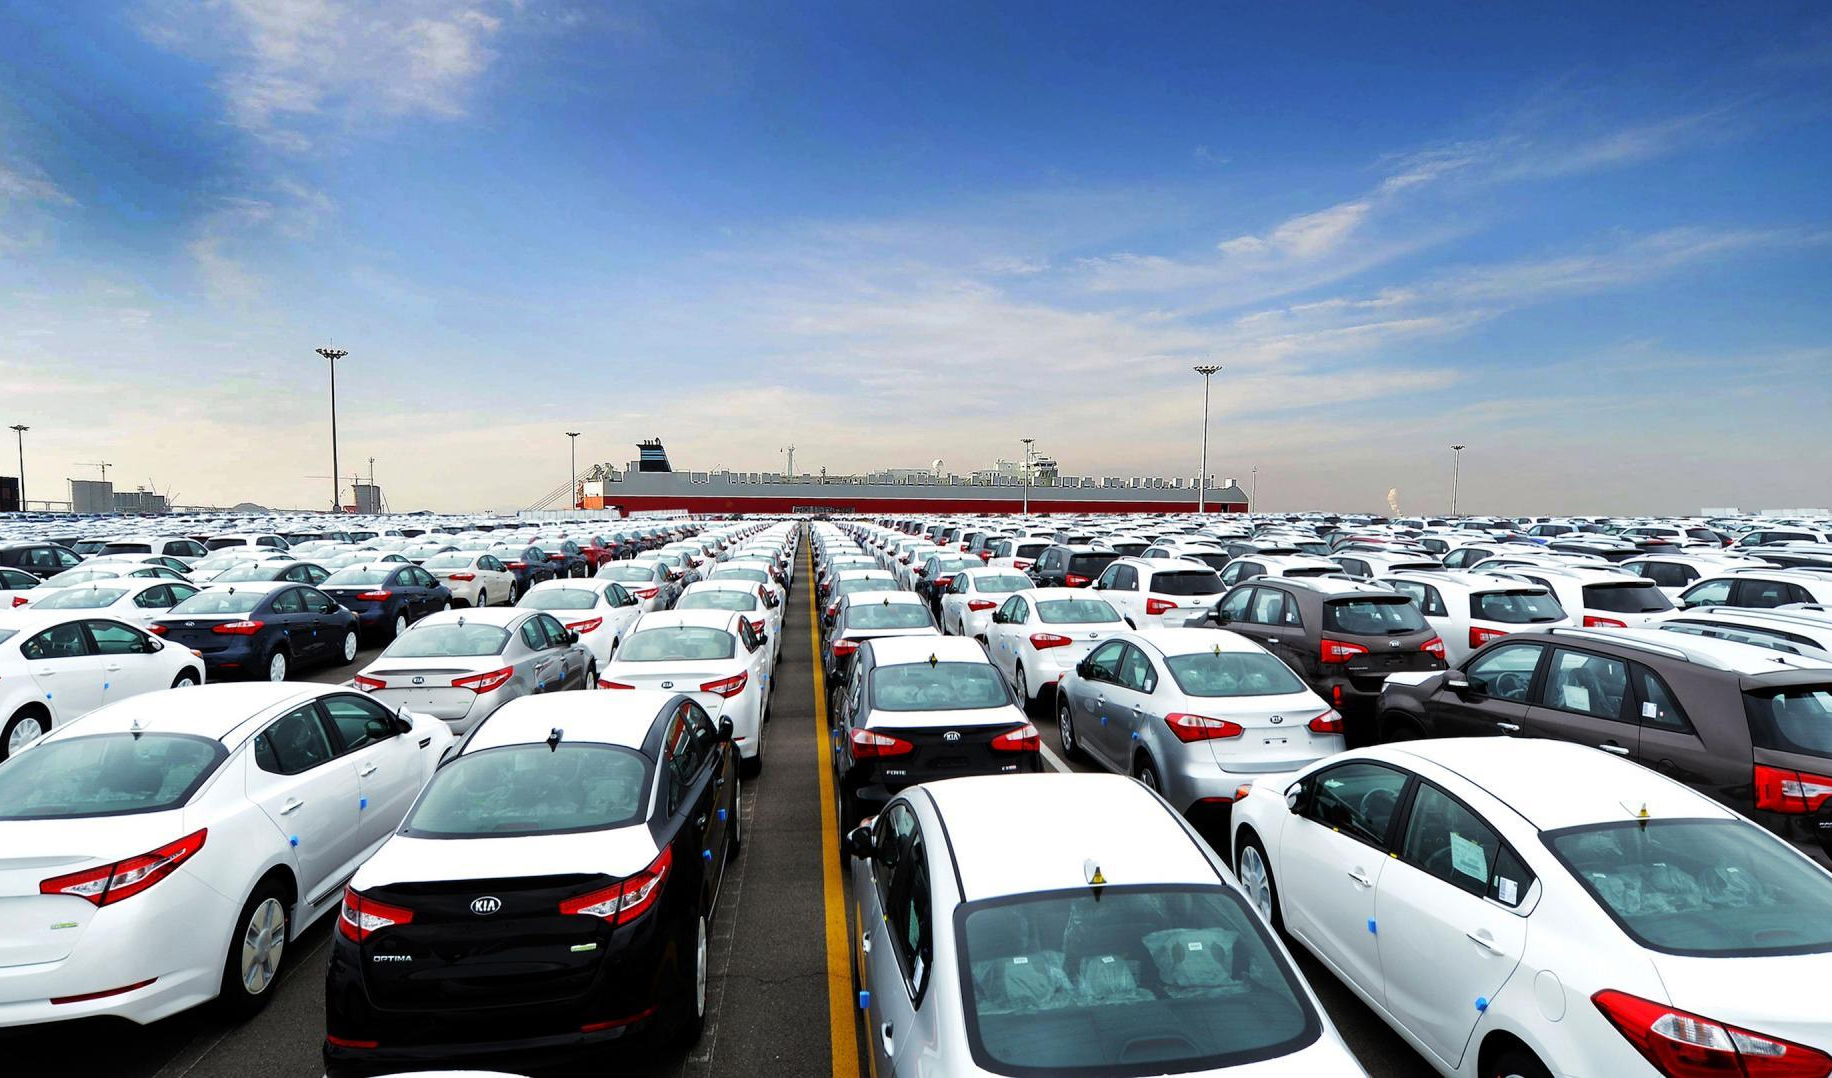 ترخیص خودروهای دپو شده با پرداخت ۴۰ درصد سود بازرگانی